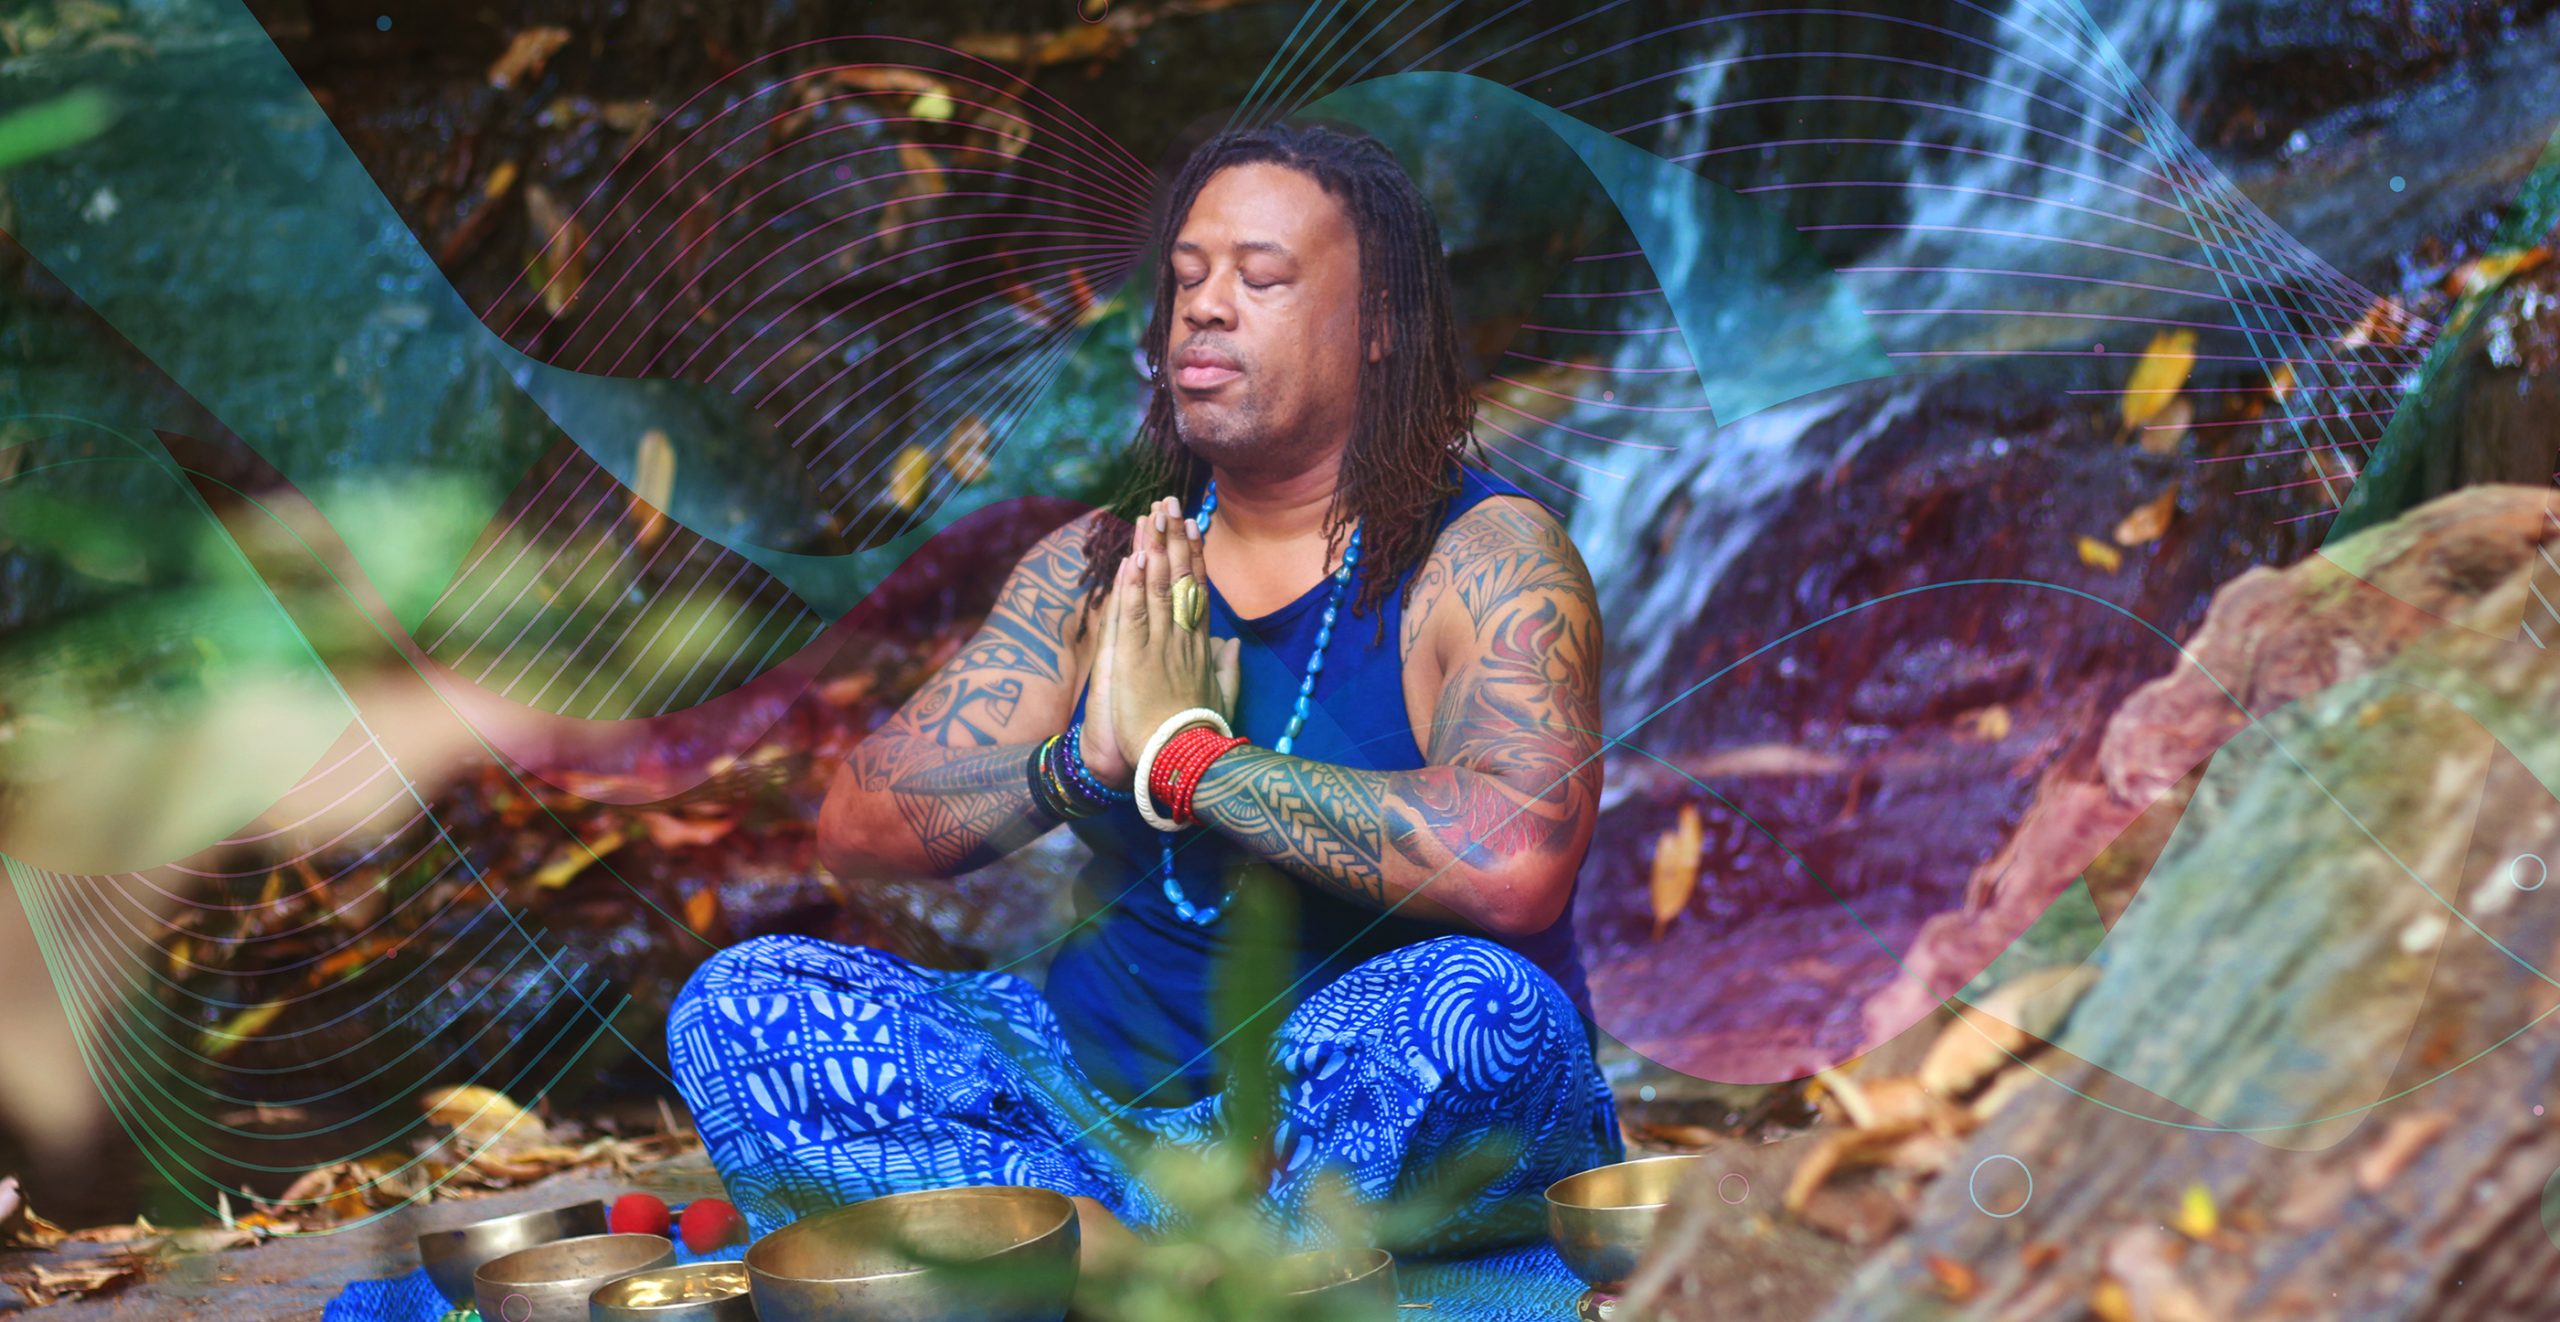 Doi Suthep Hidden Waterfall Meditation